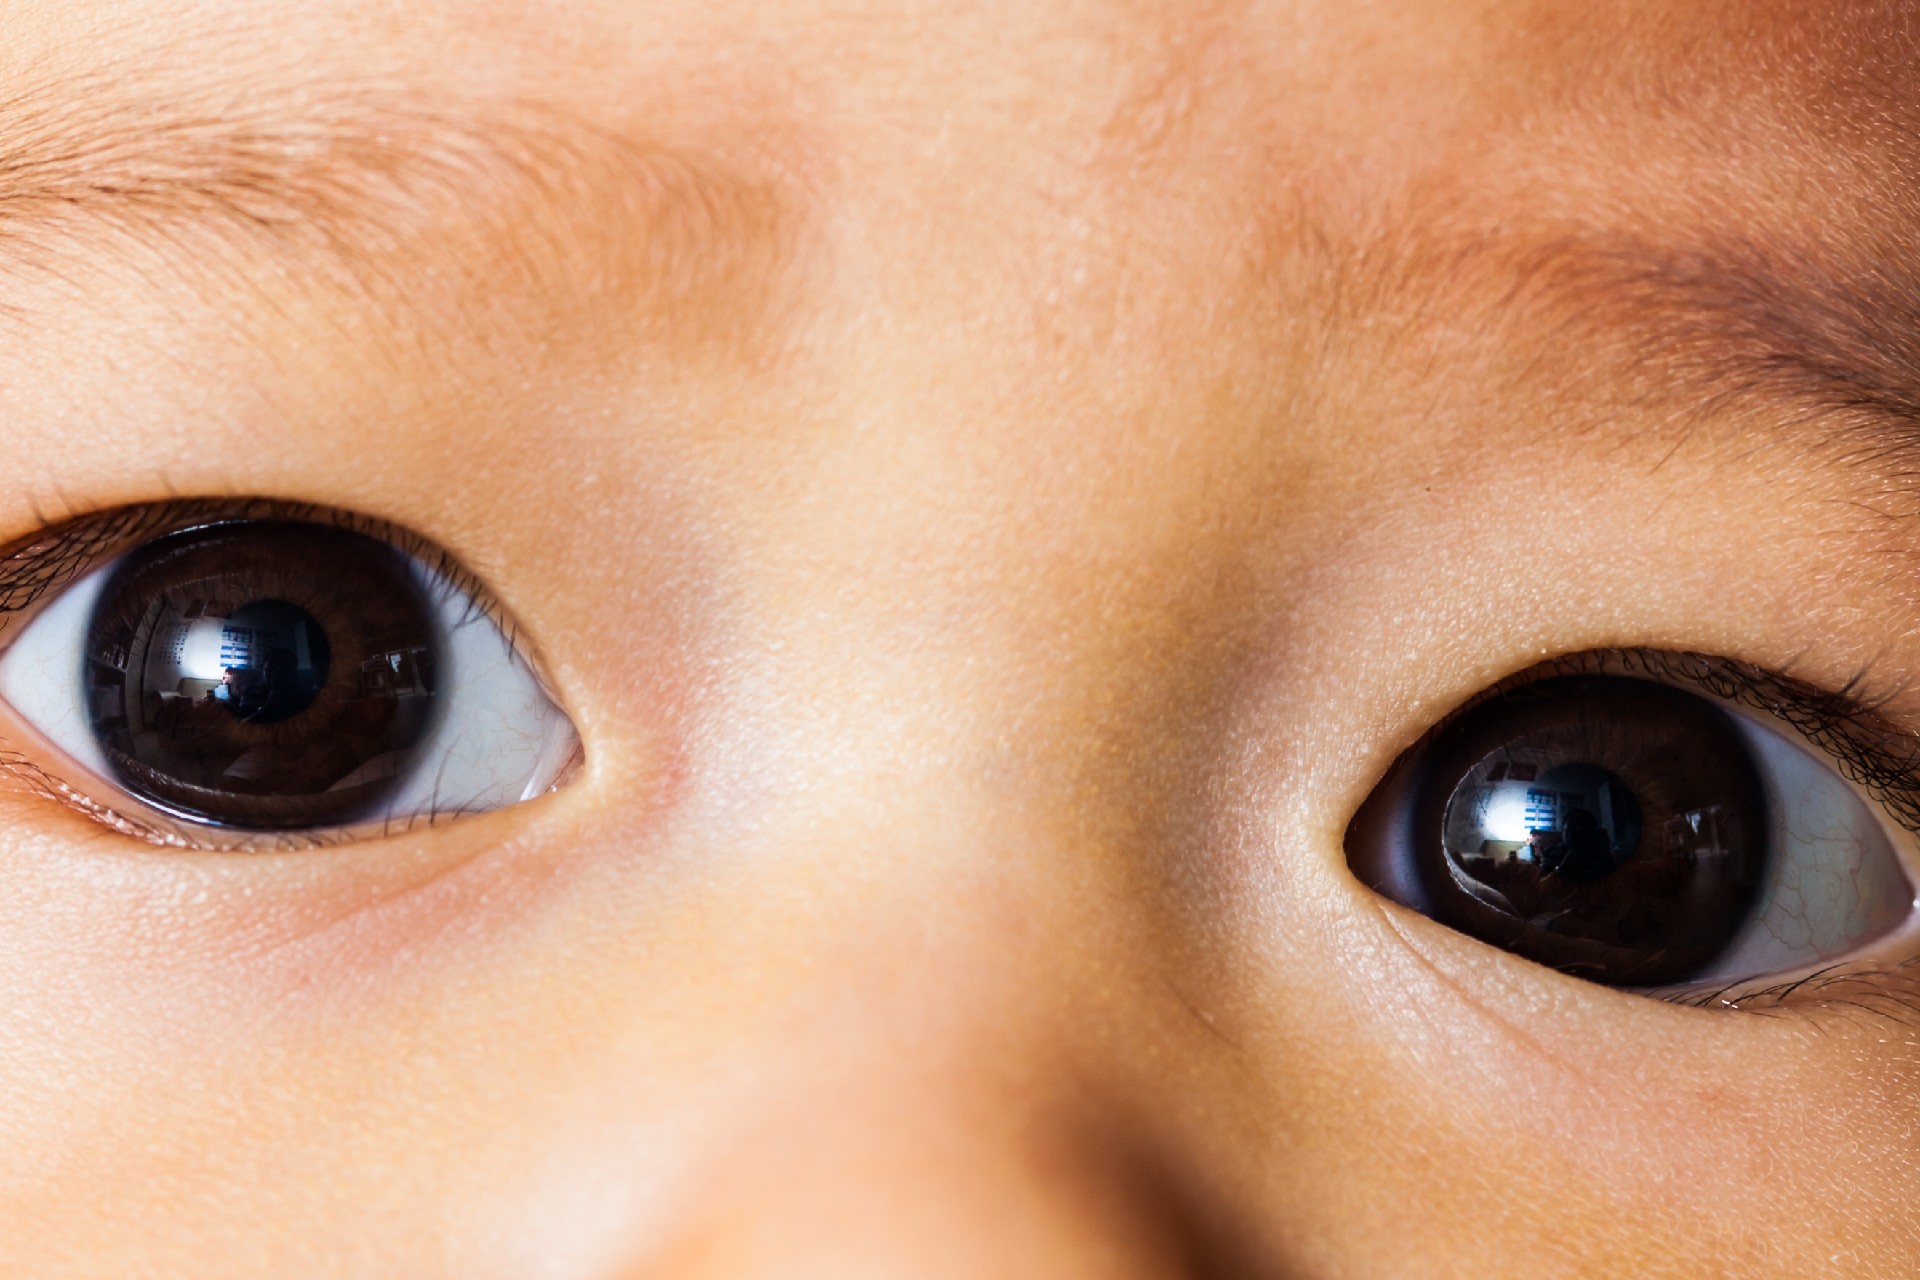 triagem neonatal - triagem ocular